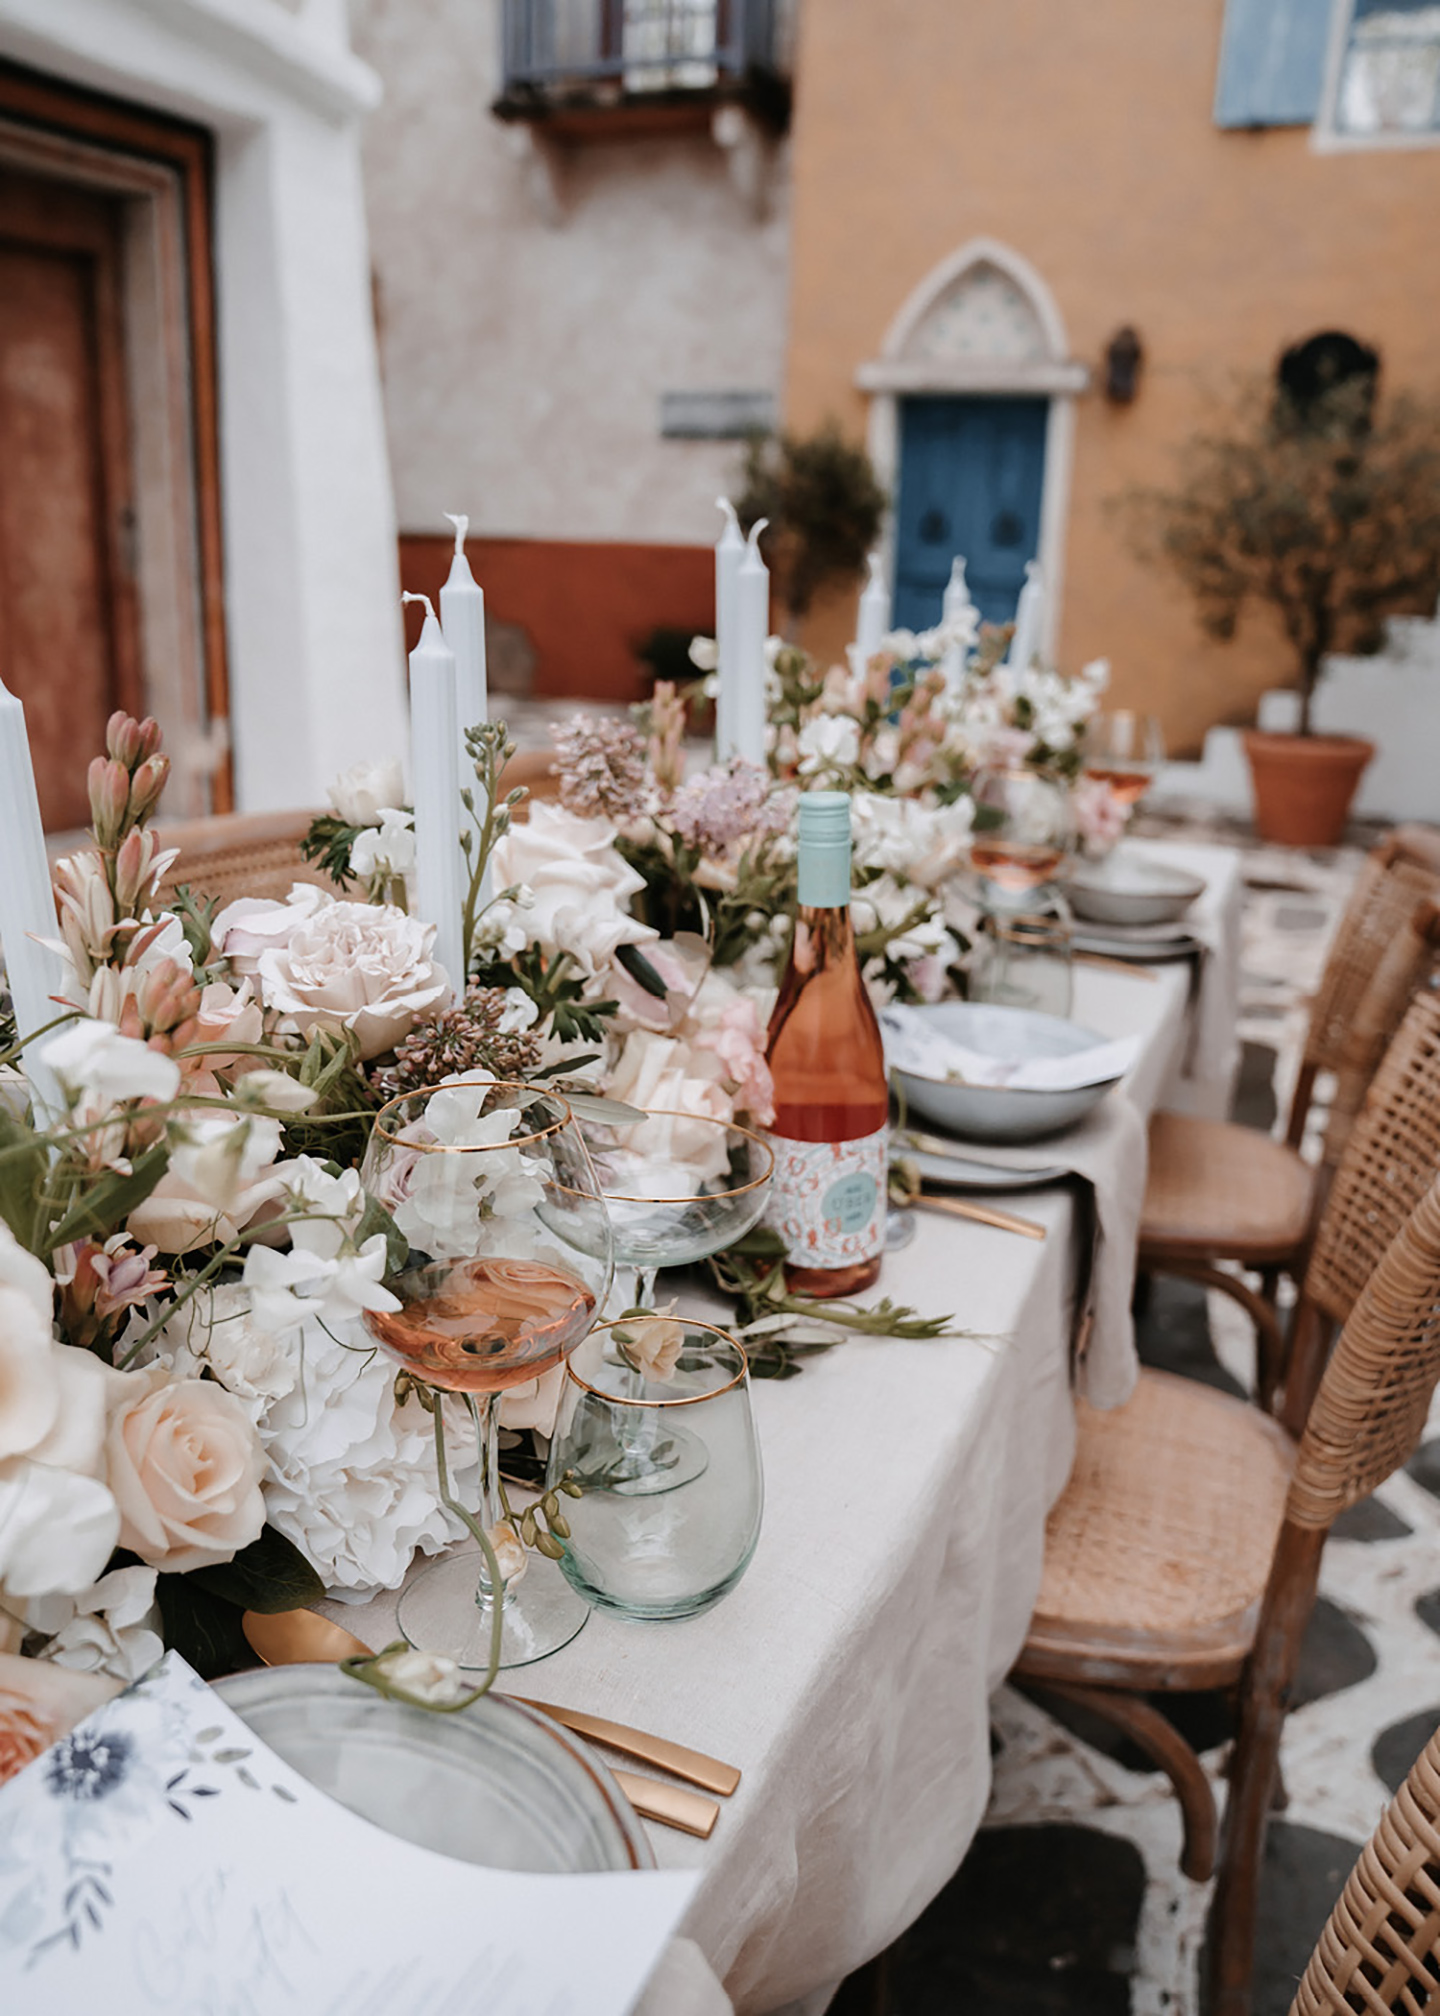 Der angerichtete mediterrane Hochzeitstisch erstrahlt mit einer Pracht aus Blumen und Dekoration. Das Besteck ist rosegold und passt zu den beige-pastellorangenen Häusern im Hintergrund.